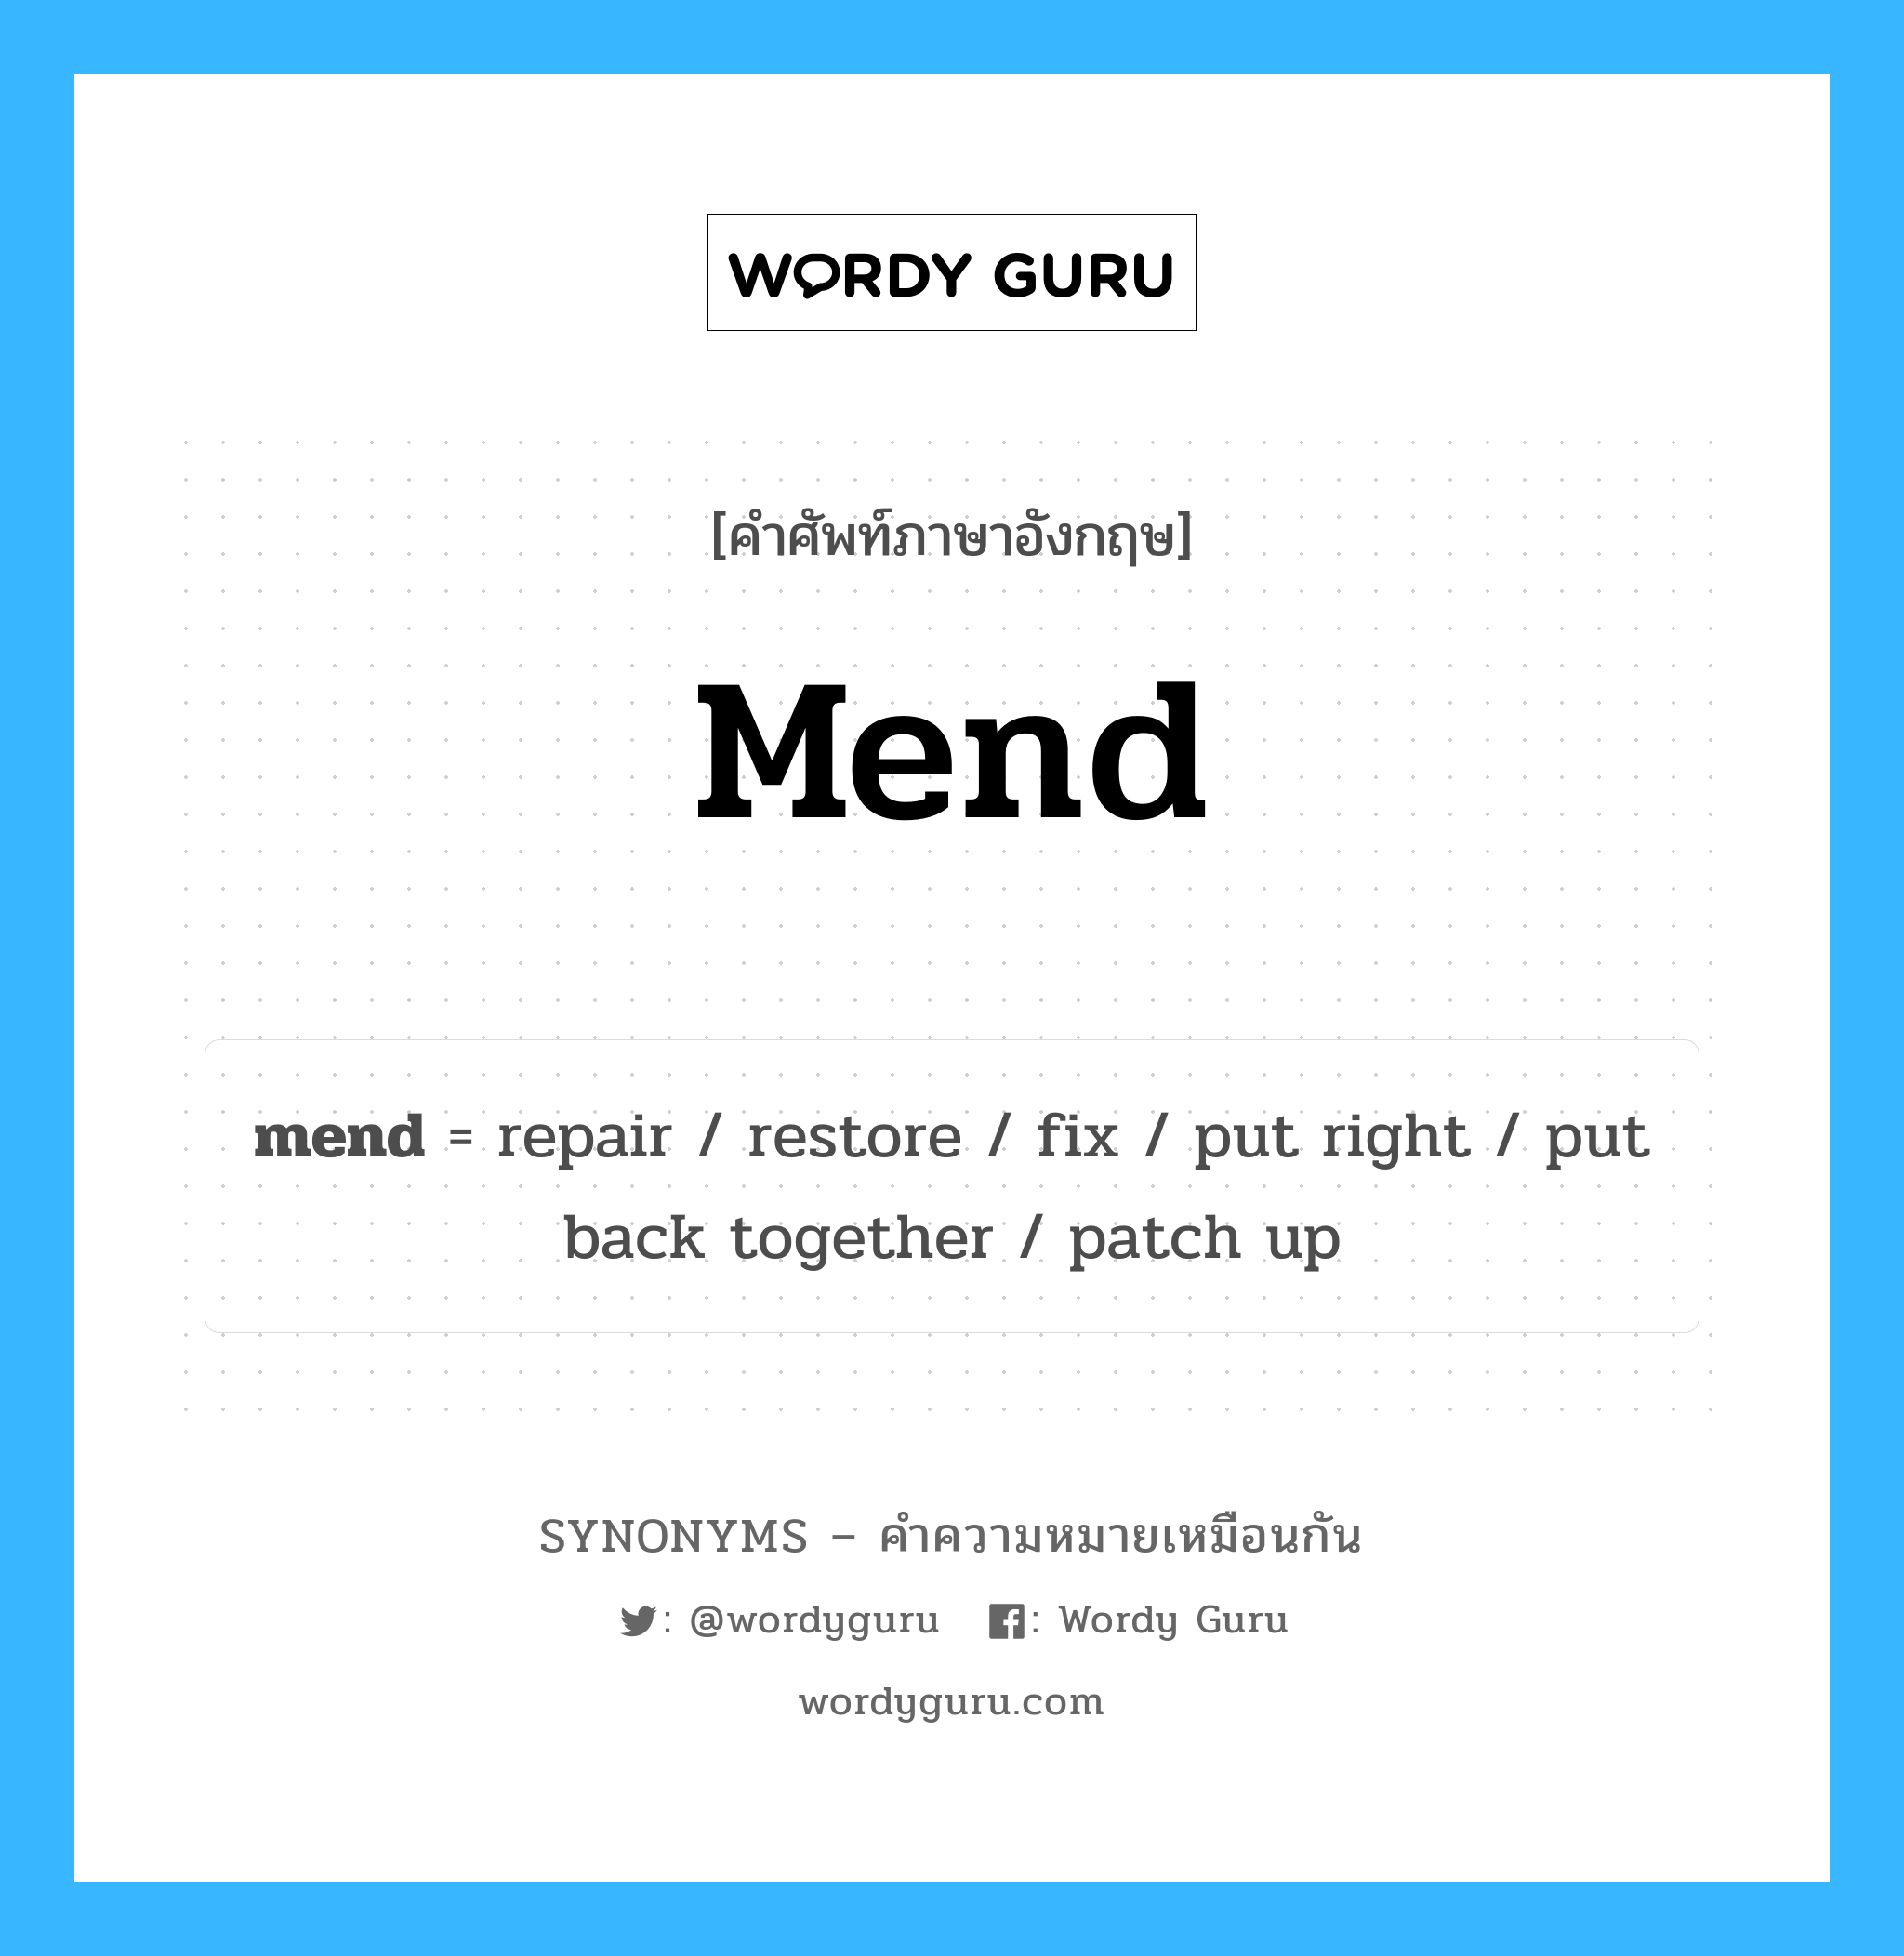 put back together เป็นหนึ่งใน mend และมีคำอื่น ๆ อีกดังนี้, คำศัพท์ภาษาอังกฤษ put back together ความหมายคล้ายกันกับ mend แปลว่า ใส่กัน หมวด mend